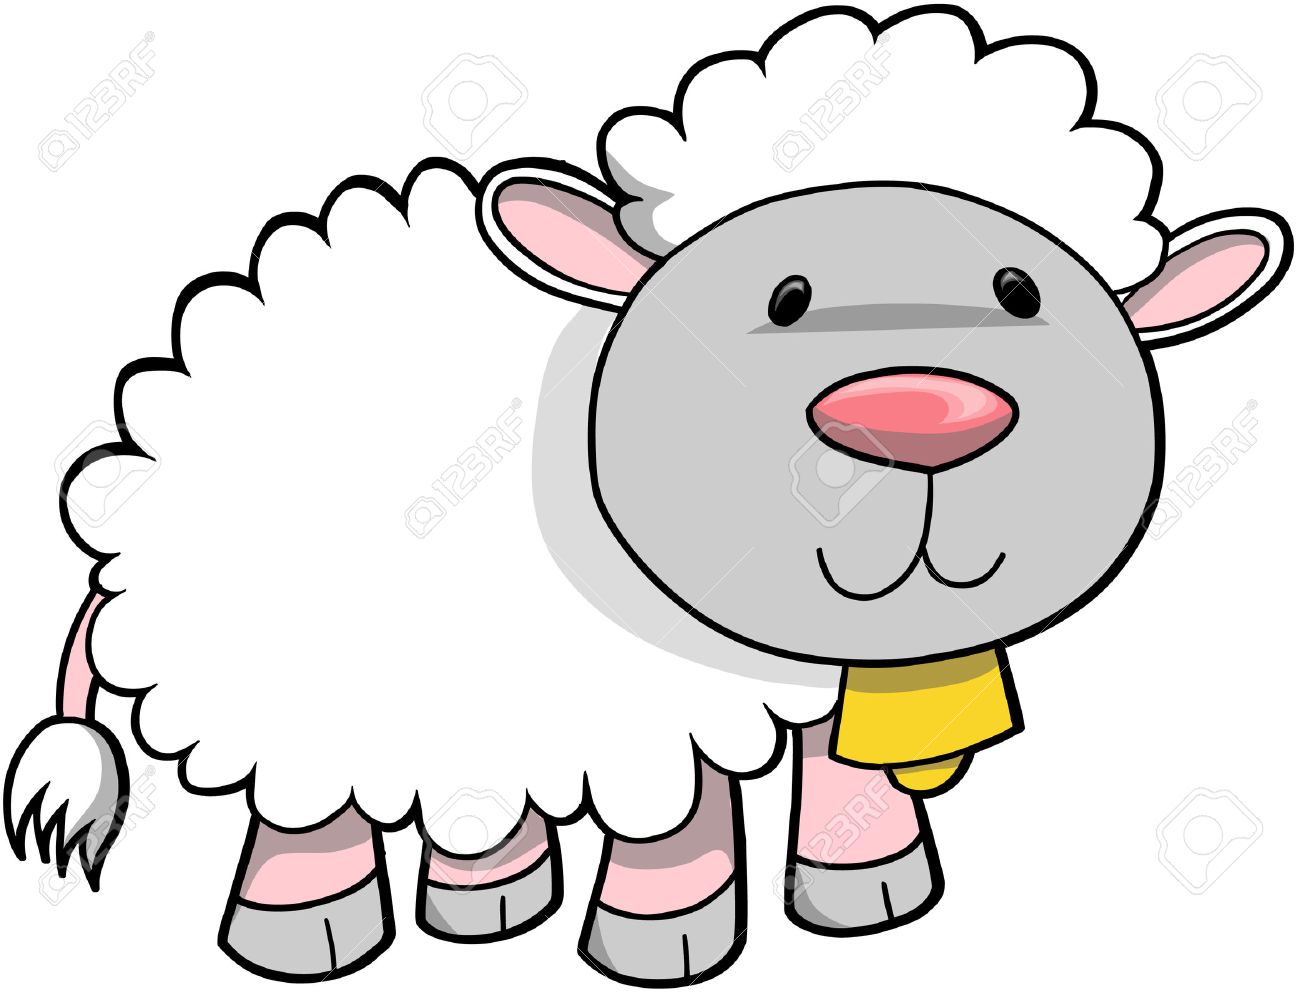 Cute sheep clipart.